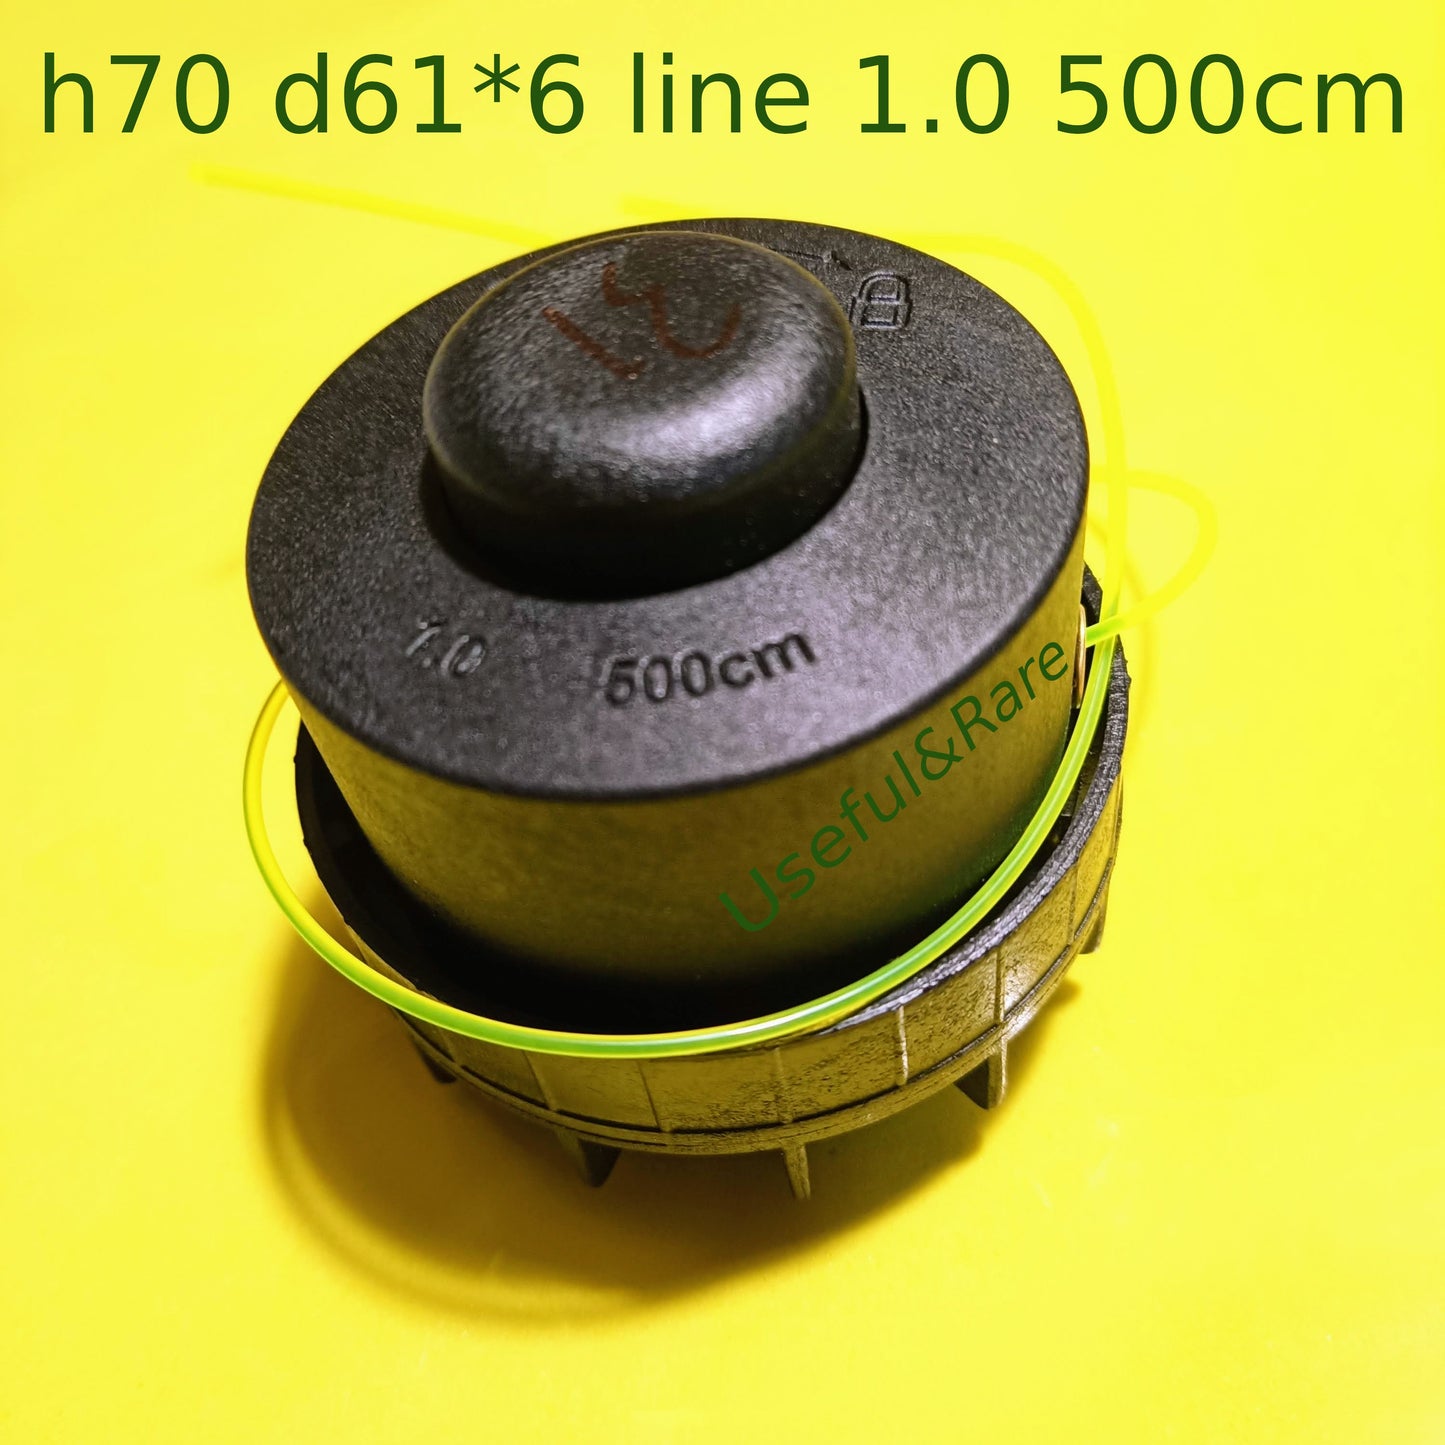 h70 d61*6 line 1.0 500cm